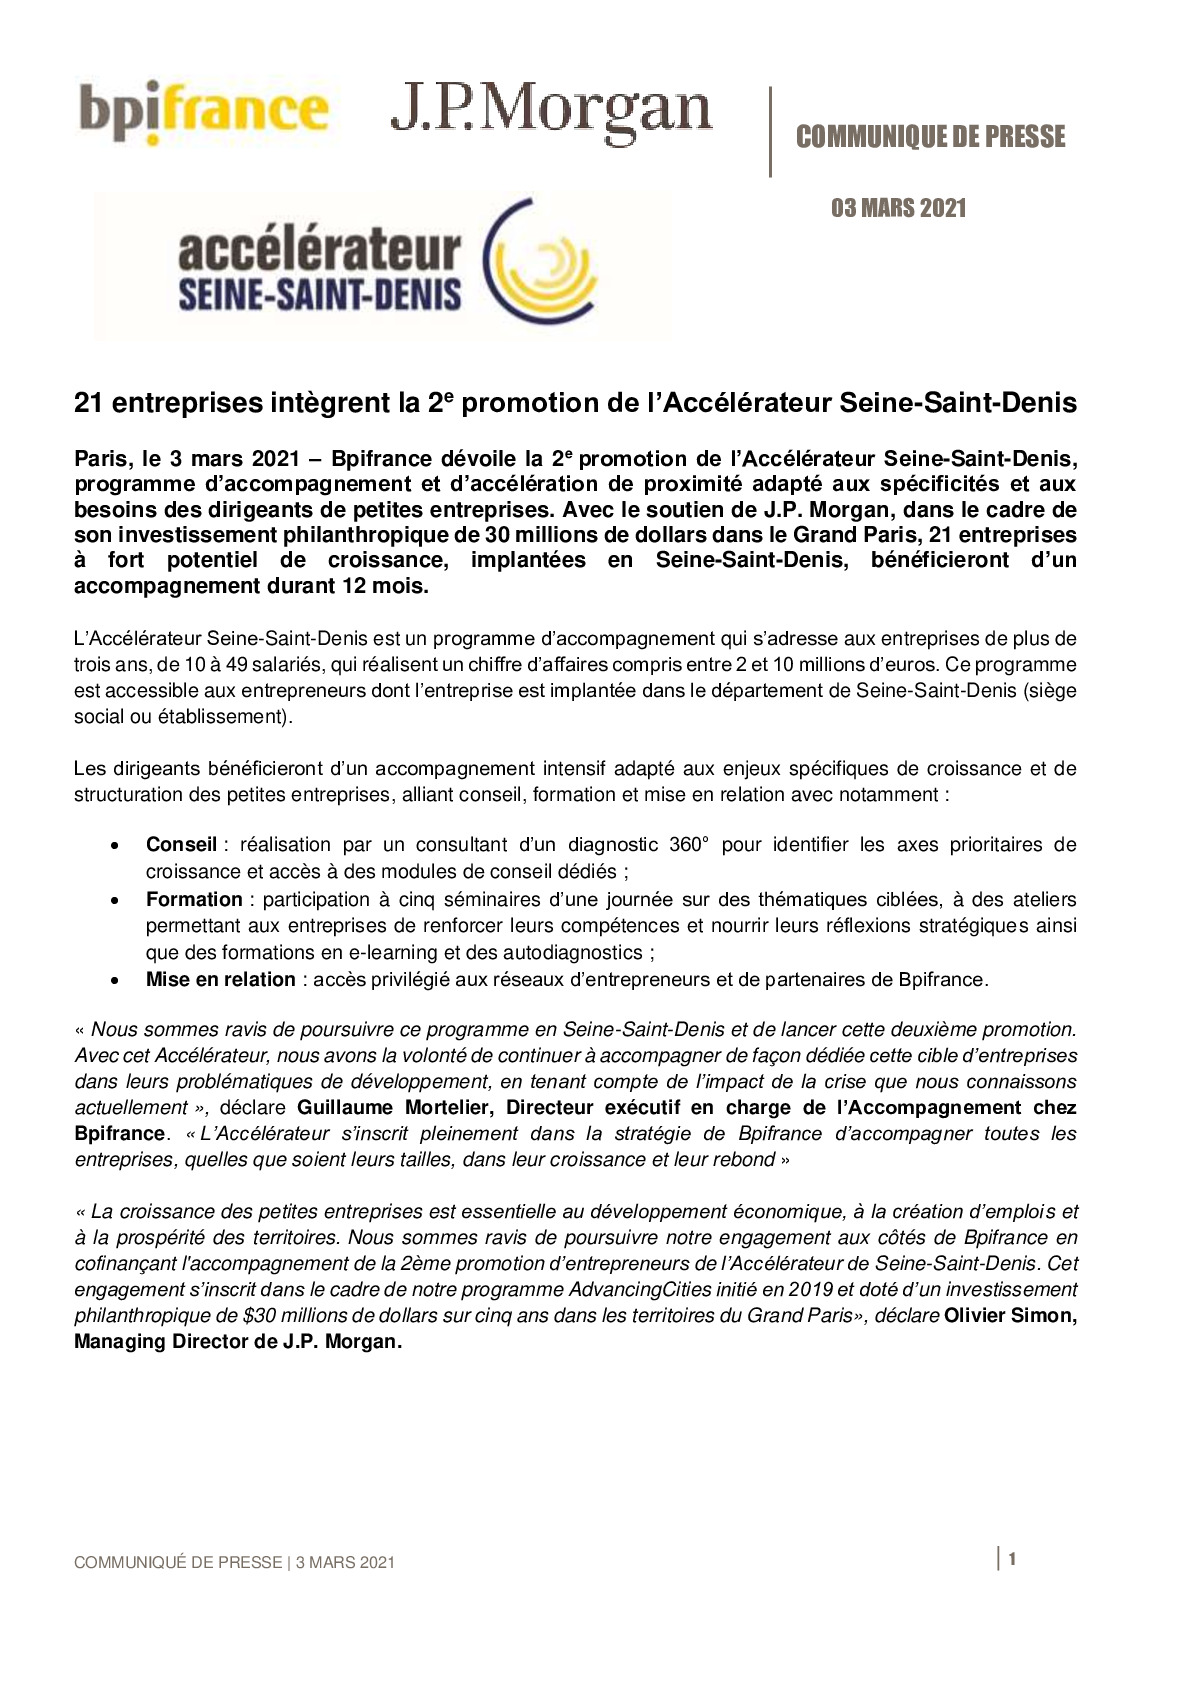 2021 03 03 – CP Bpifrance JP Morgan – Lancement Accelerateur Seine Saint Denis 2-pdf